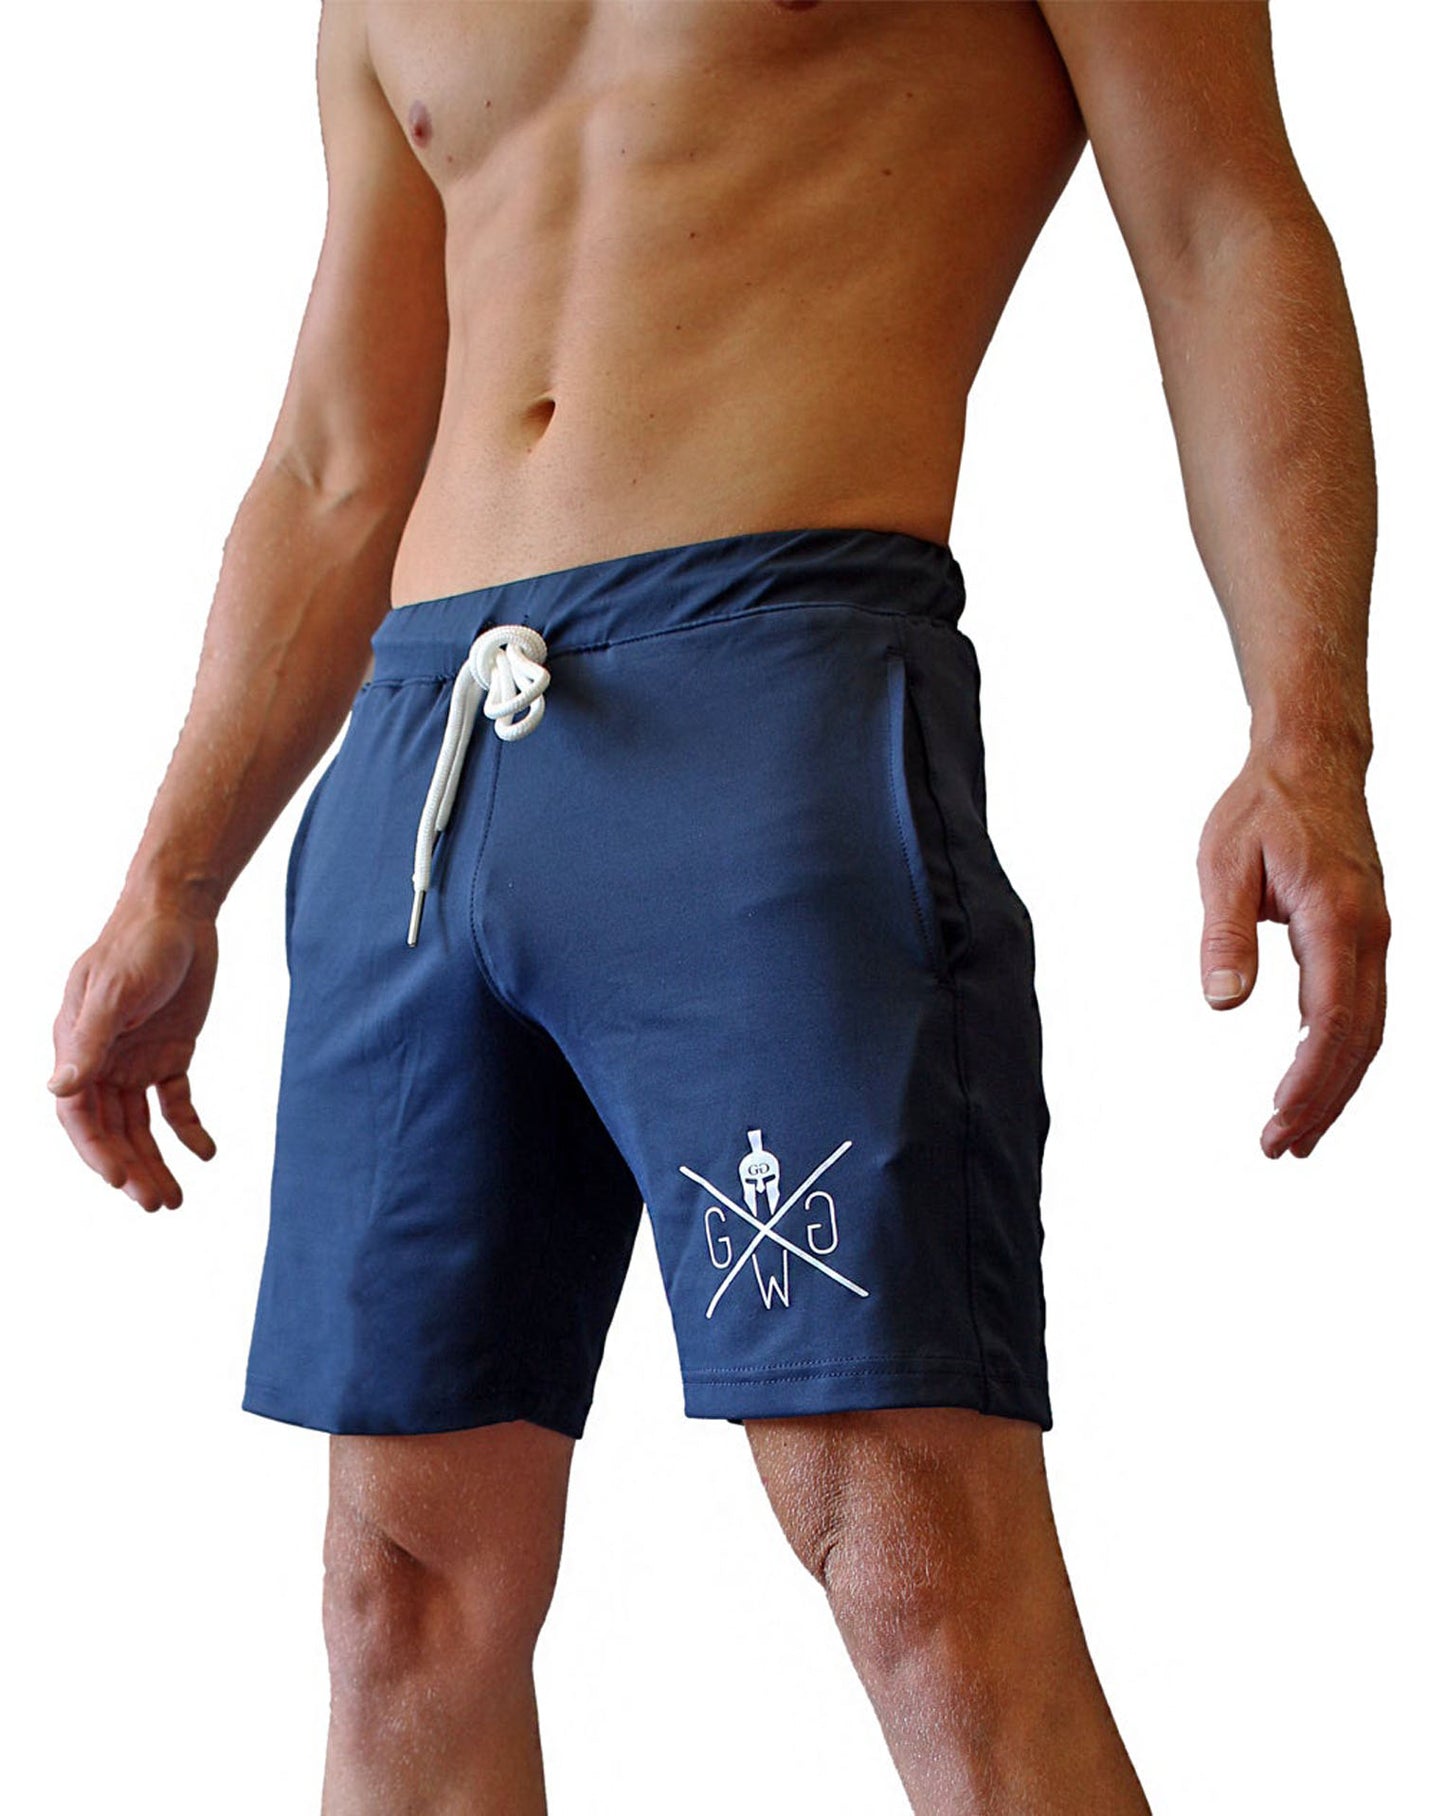 Sportliche und elegante Herren Fitness Shorts in Night Blue, perfekt für das Gym und Outdoor-Aktivitäten, von Gym Generation.